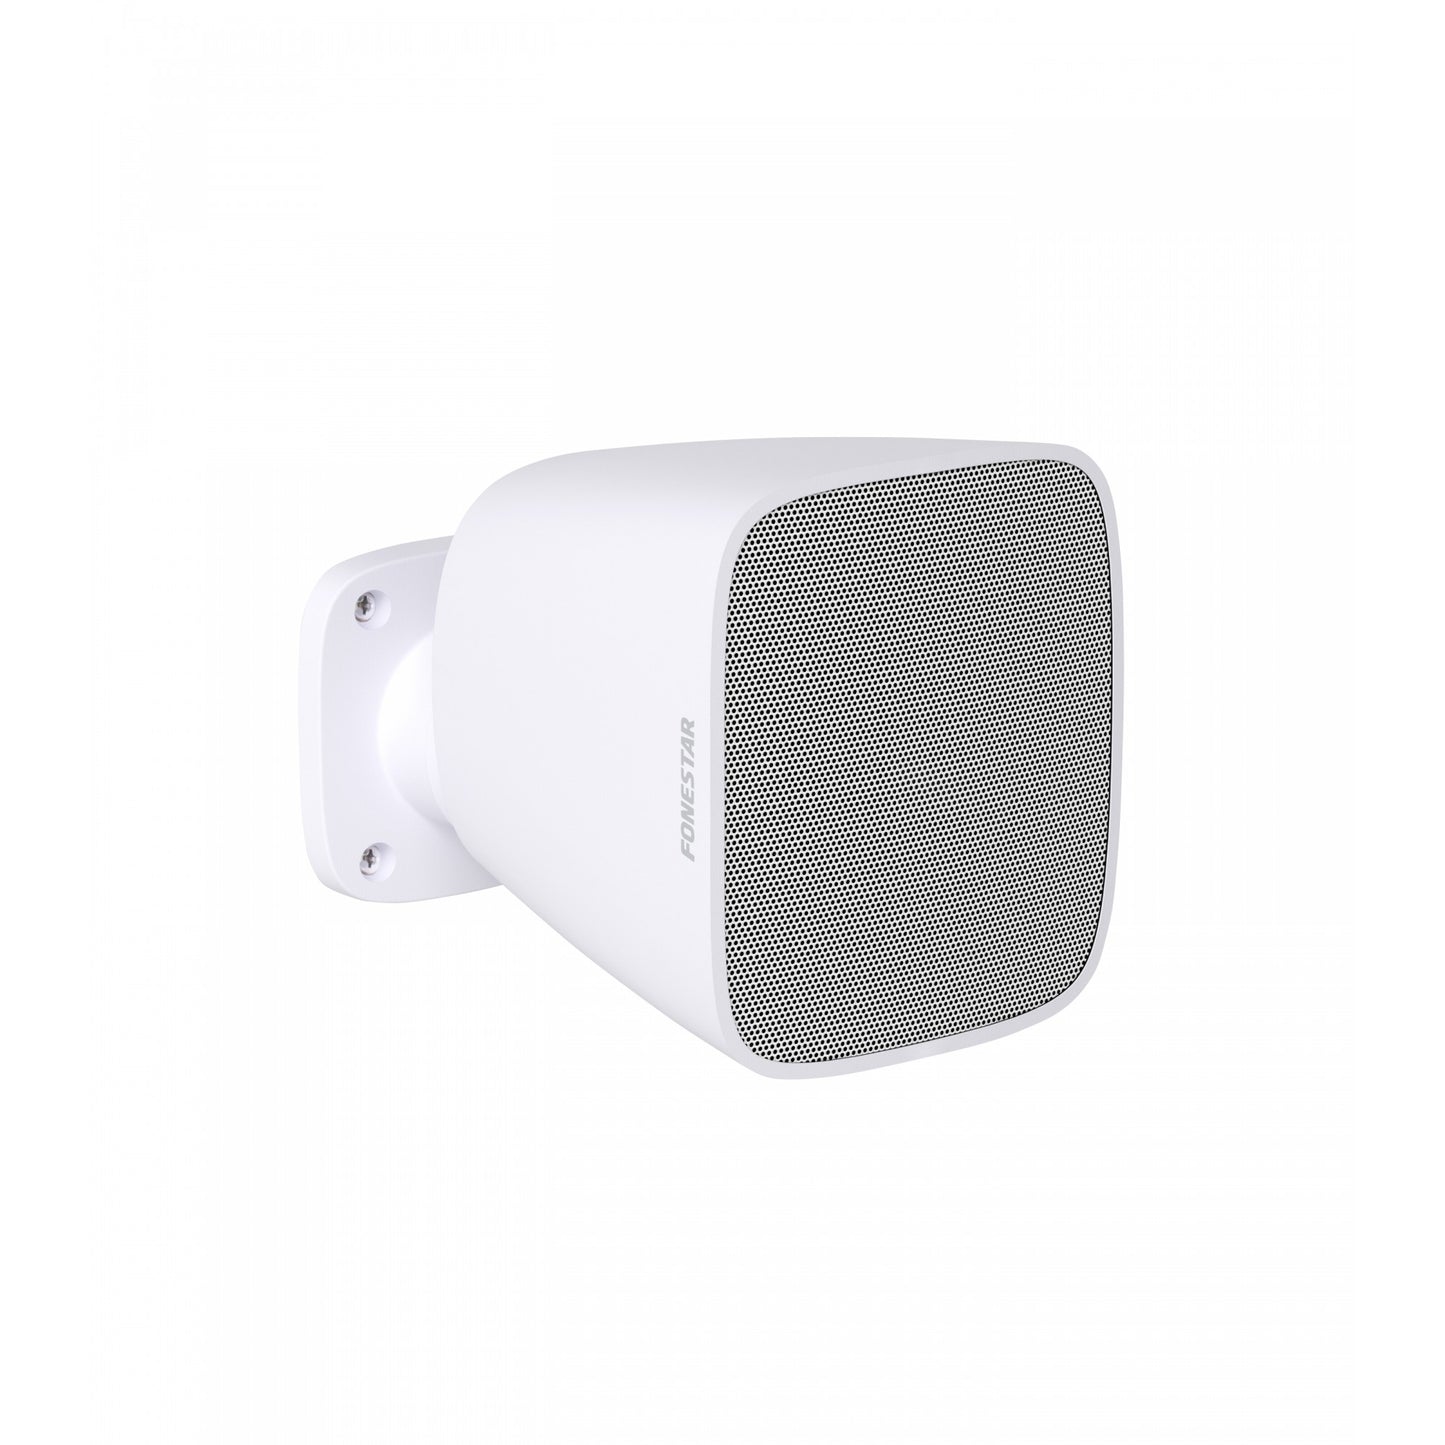 Fonestar Sonora 3TB Surface speaker, audio speaker with 100V line transformer, low impedance speaker cabinet, white